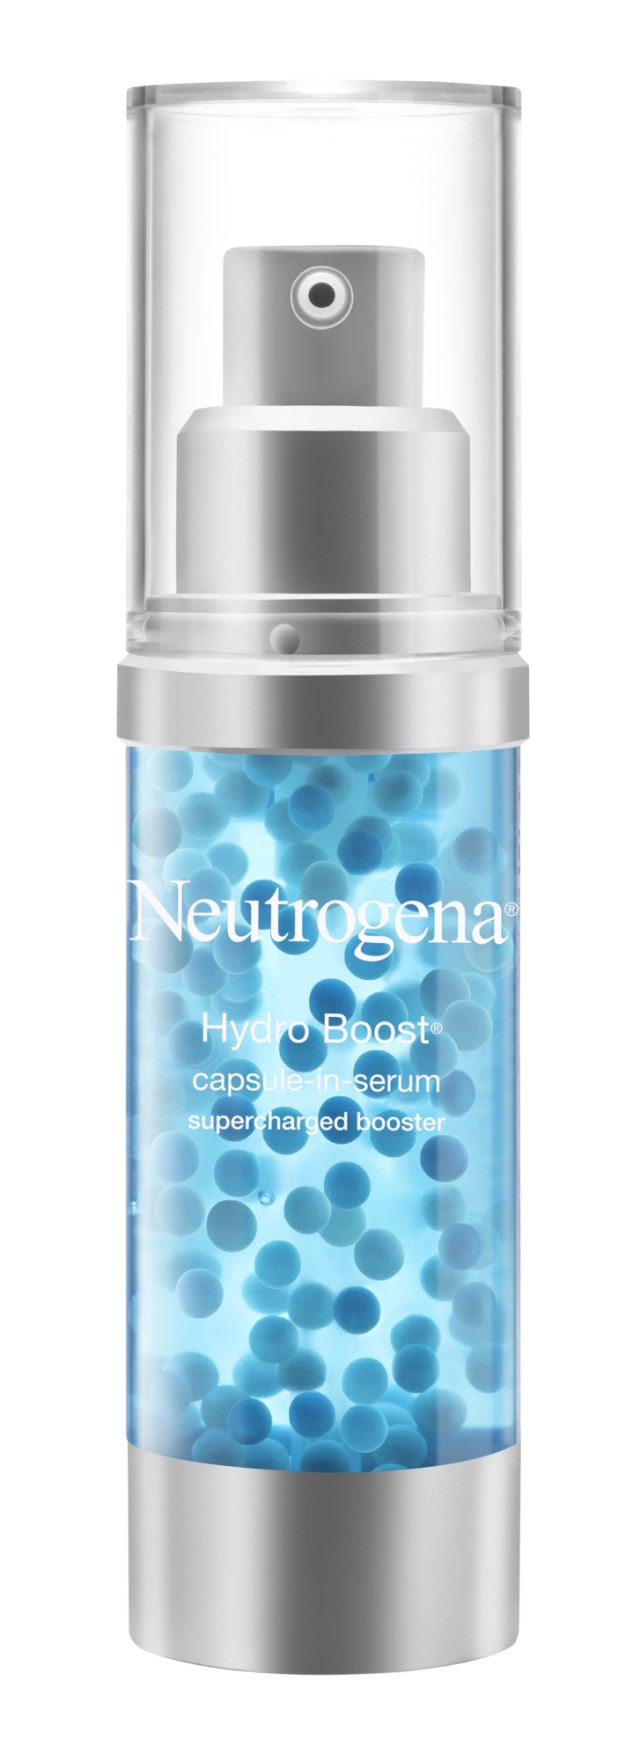 Neutrogena Hydro Boost Supercharged Serum Ενυδατικός Ορός Προσώπου με Yαλουρονικό Οξύ 30ml